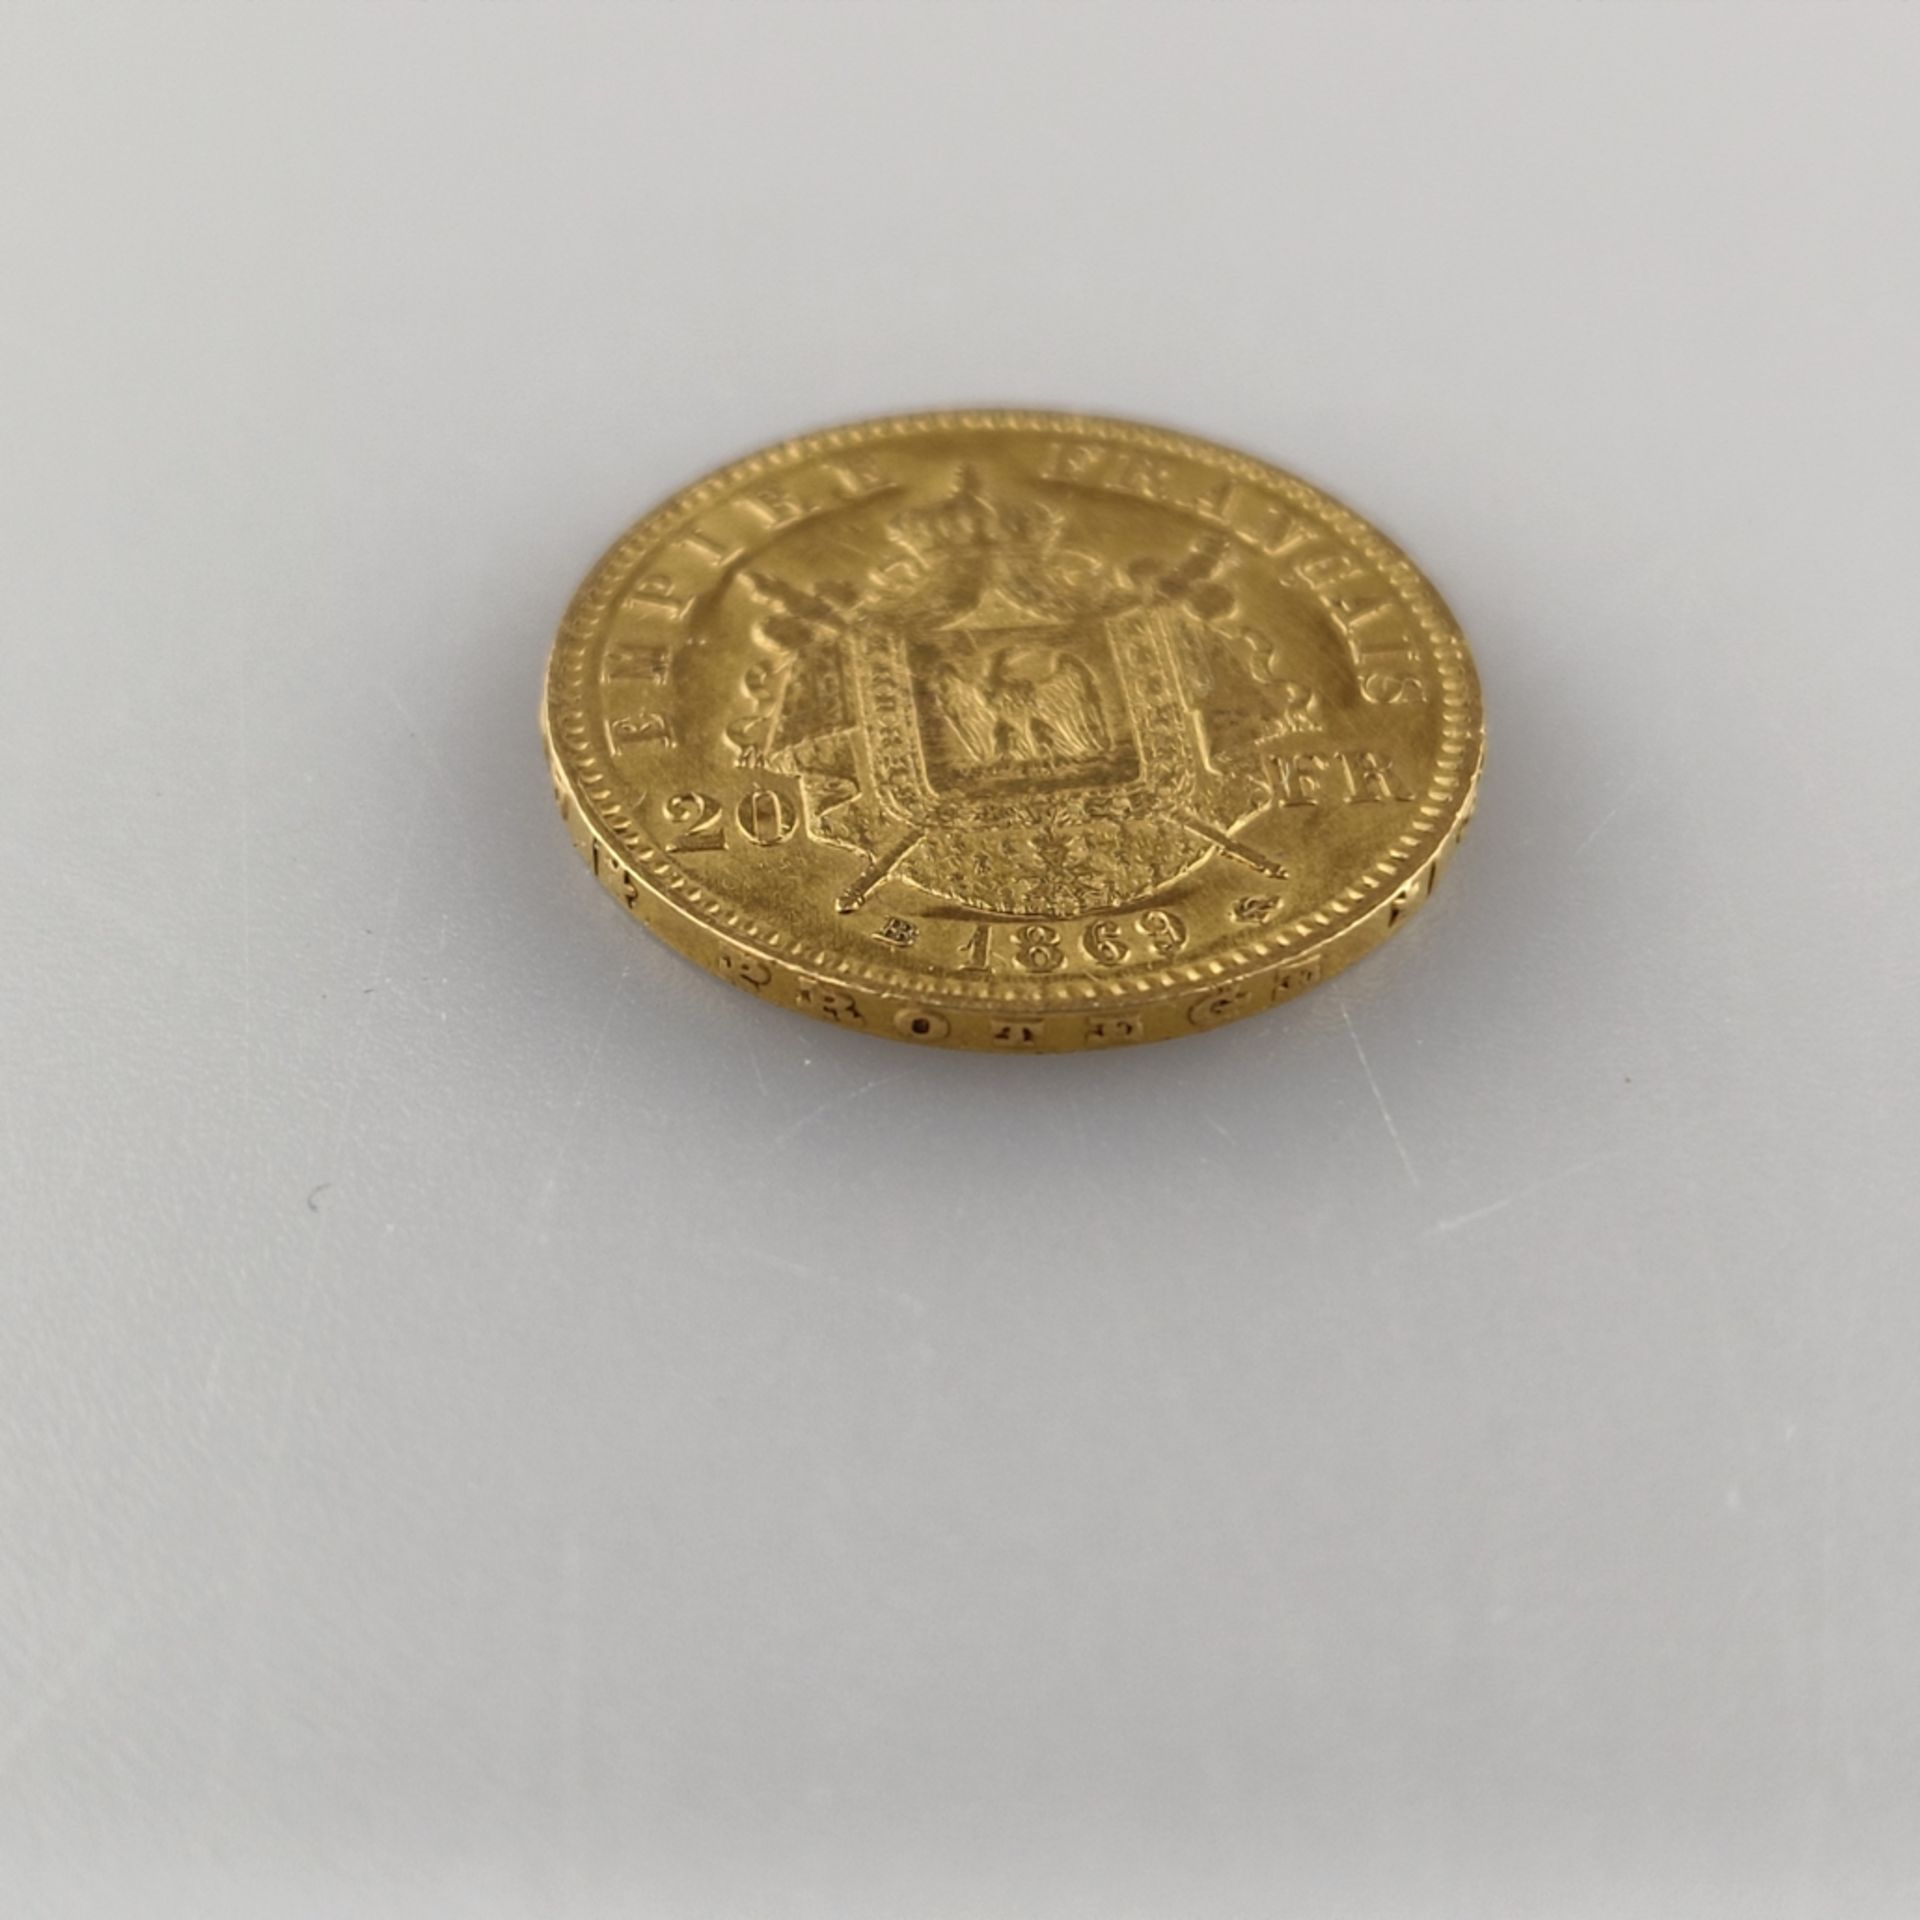 Goldmünze 20 Francs 1867 - Frankreich, Napoleon III Empereur, 900/000 Gold, Entwurf: Barre, Prägema - Image 3 of 3